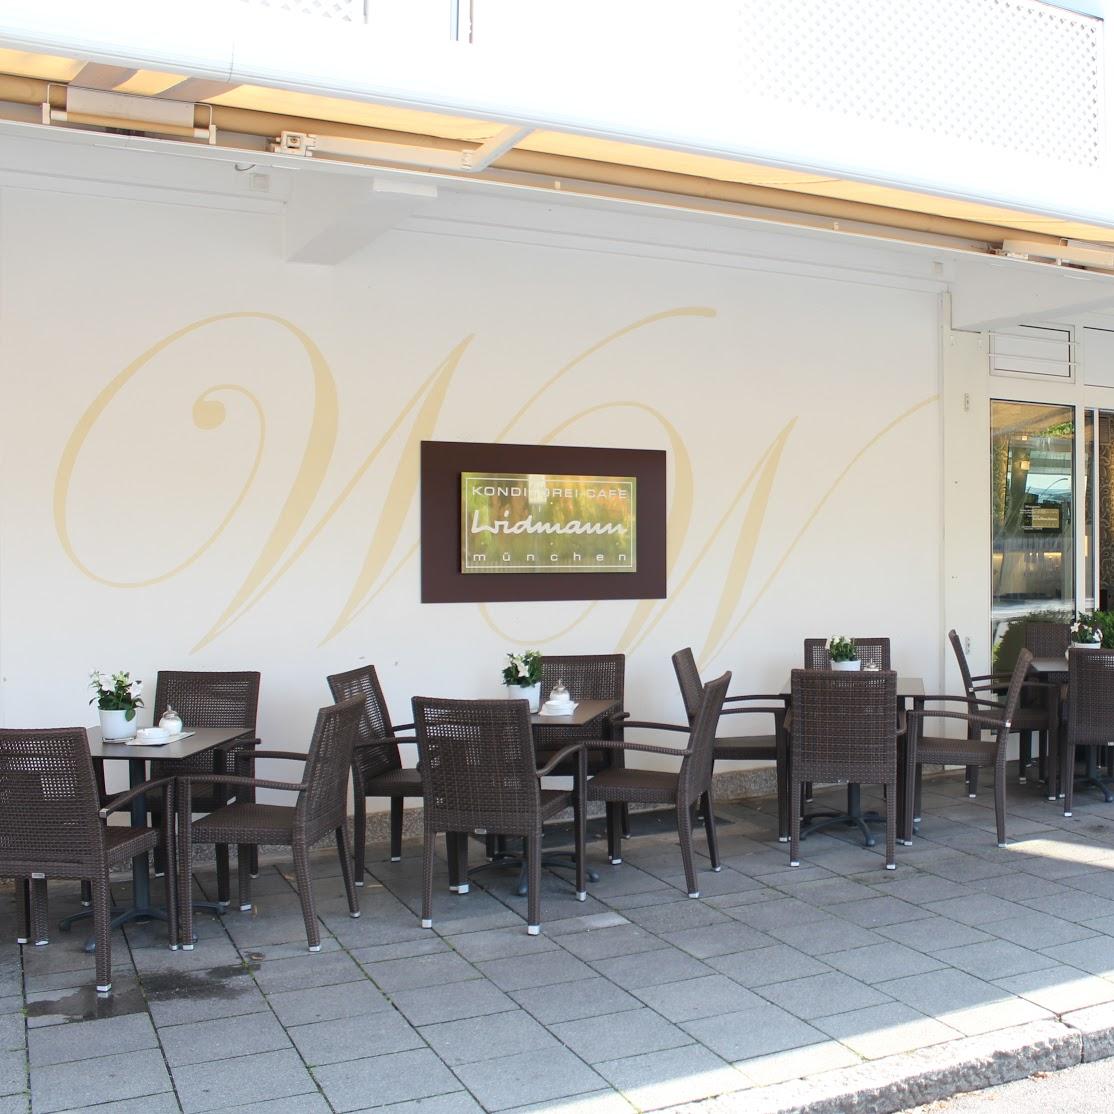 Restaurant "Konditorei Widmann" in München